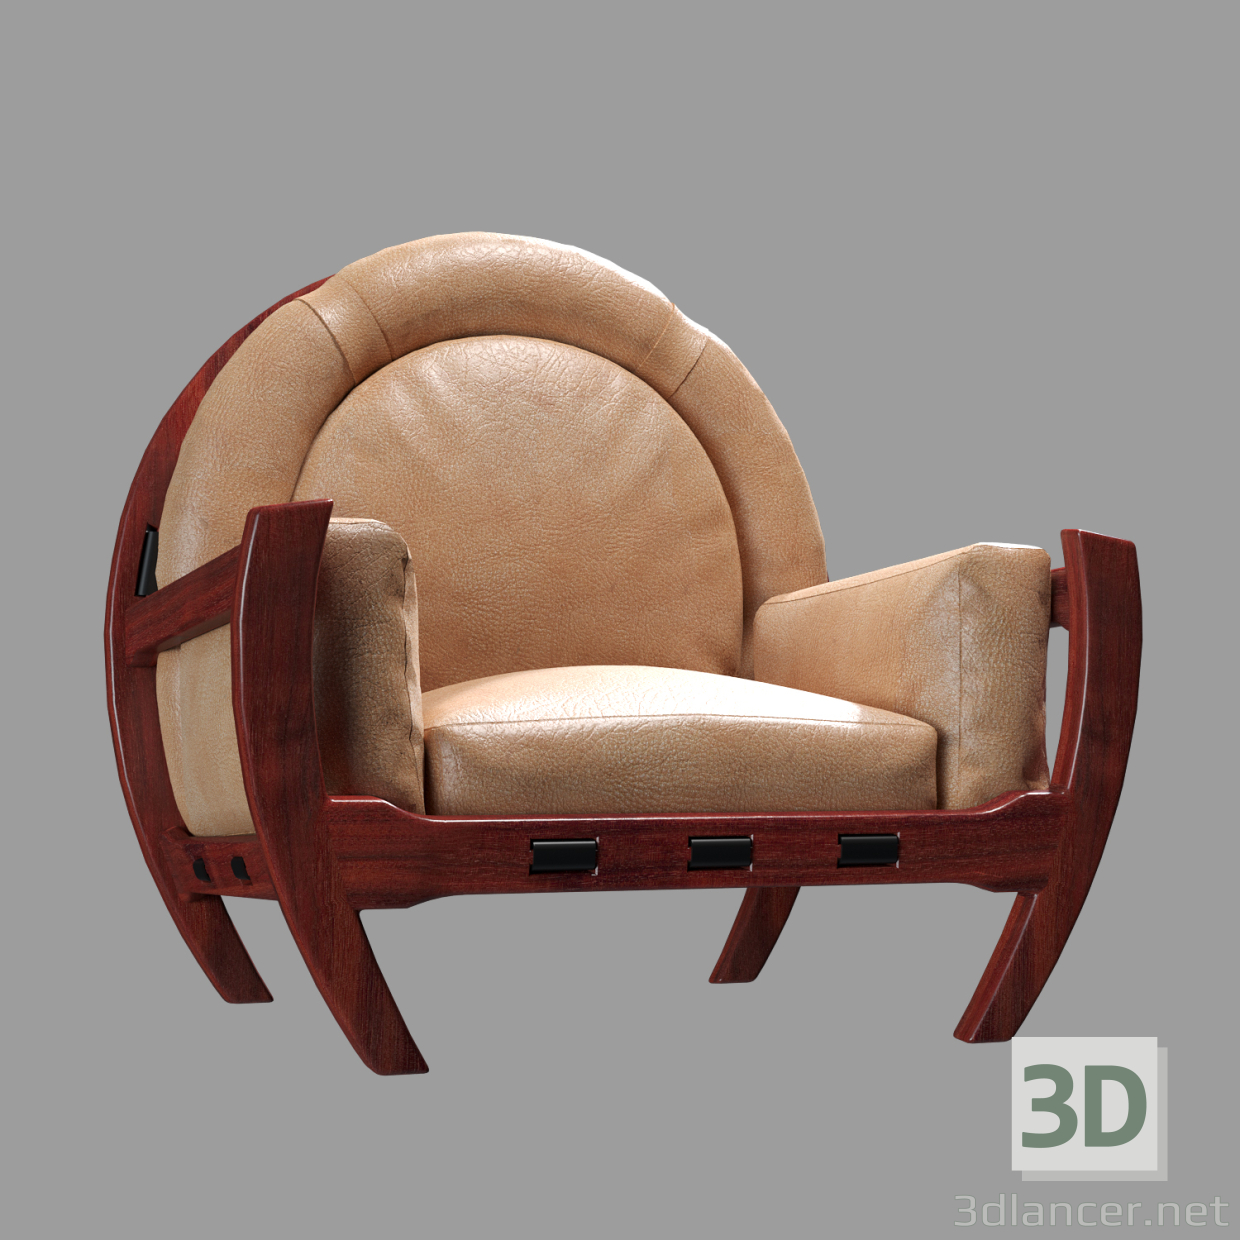 PRESIDENTE _FRIGERIO LUCIANO 3D modelo Compro - render